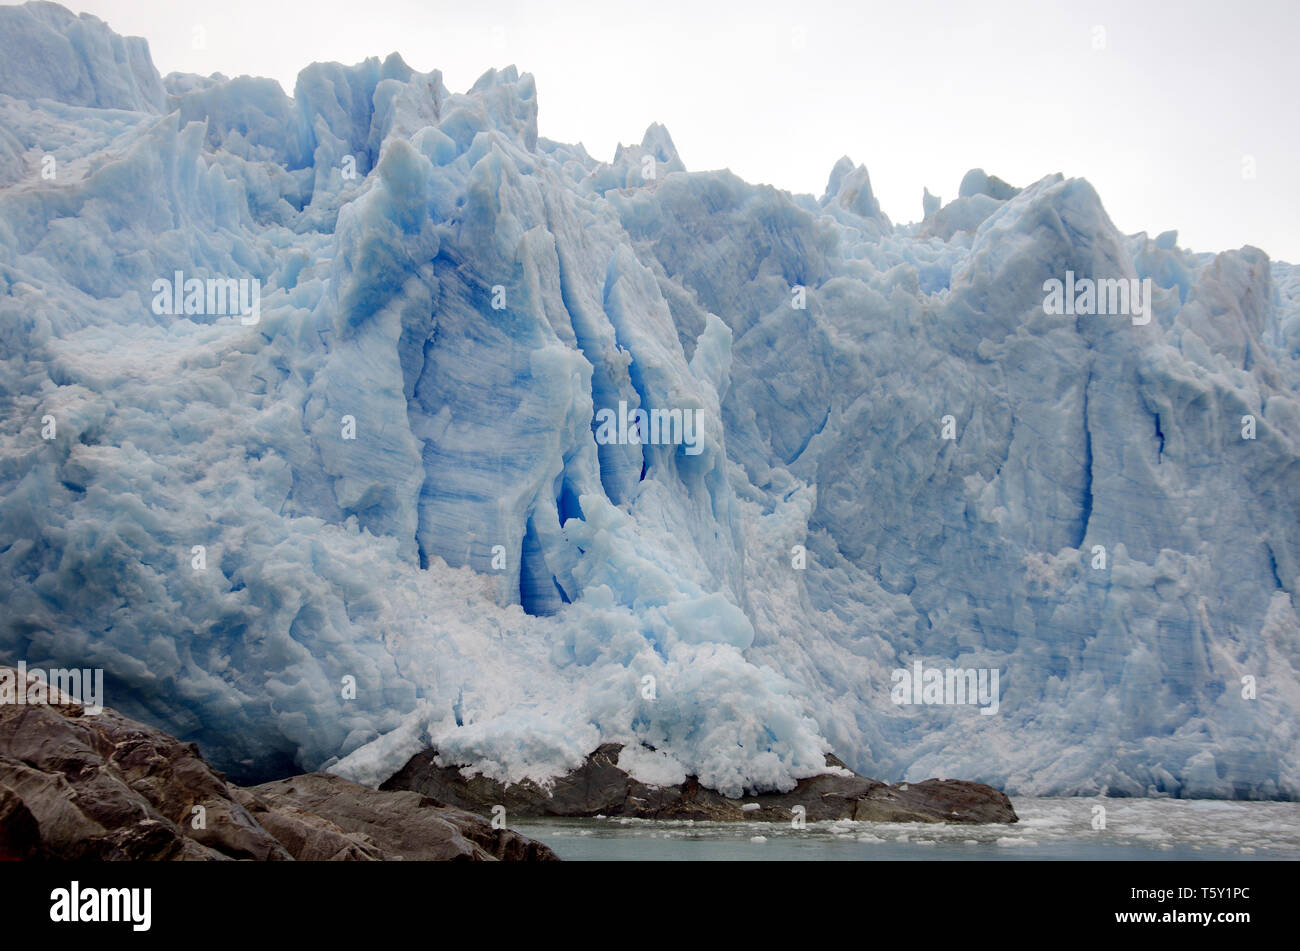 La propia imagen de un amenazante y incesantemente glaciar crepitante puede golpear el miedo o el asombro por su alto poder de paredes Foto de stock